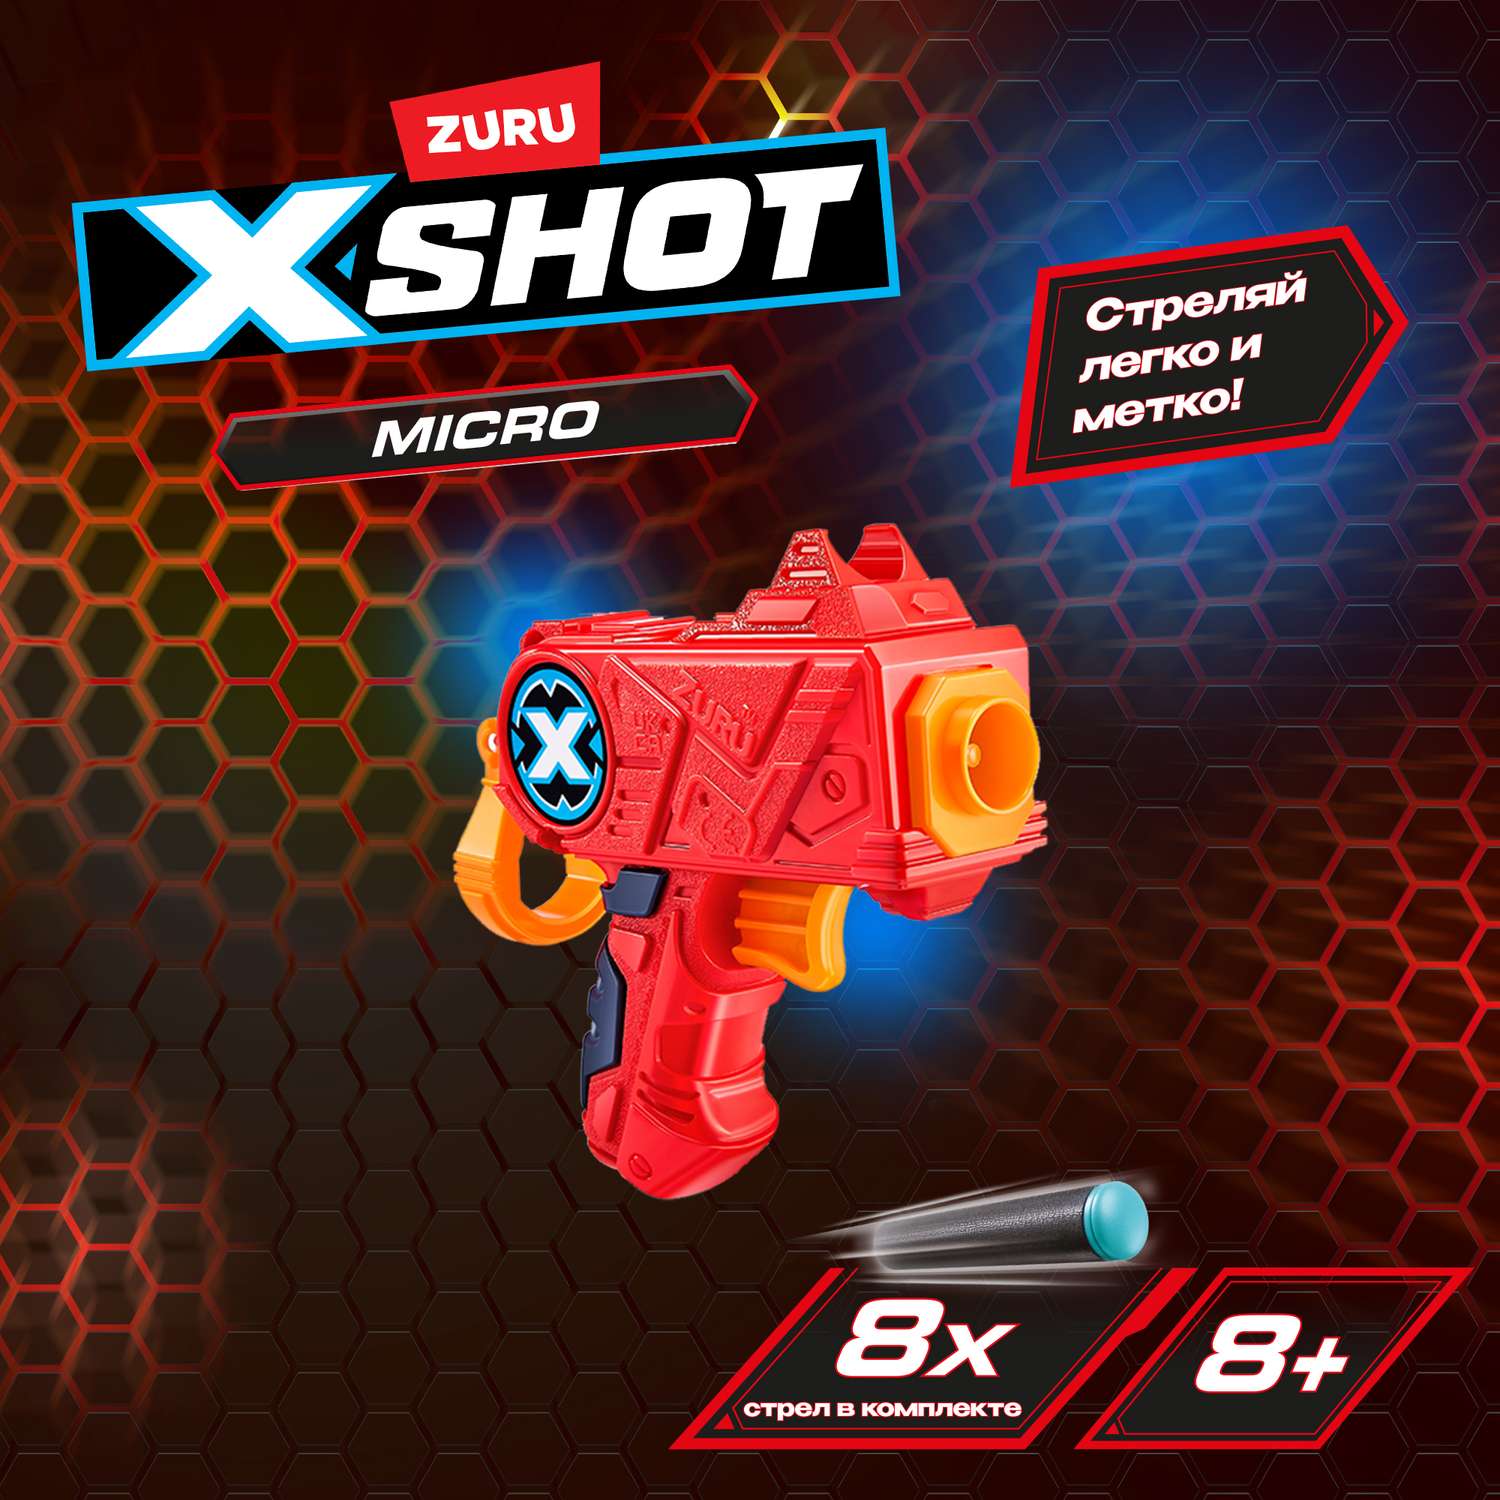 Набор для стрельбы X-SHOT  Микро - фото 1